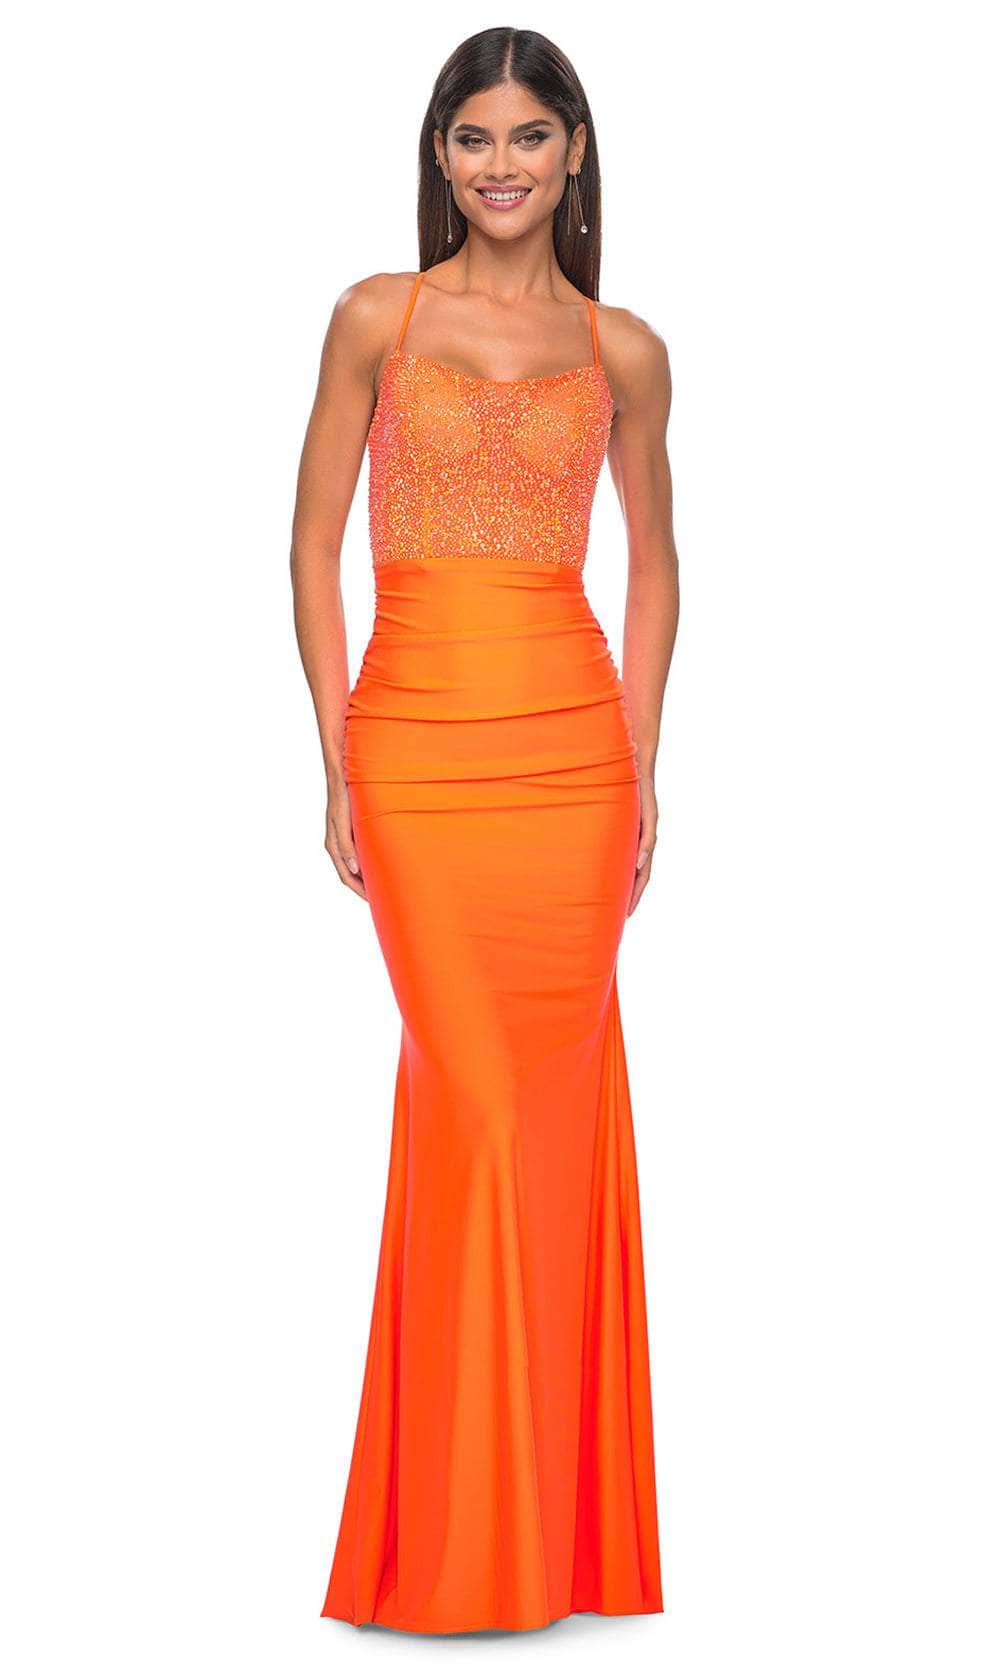 Image of La Femme 32325 - Rhinestone Embellished Sleeveless Prom Dress